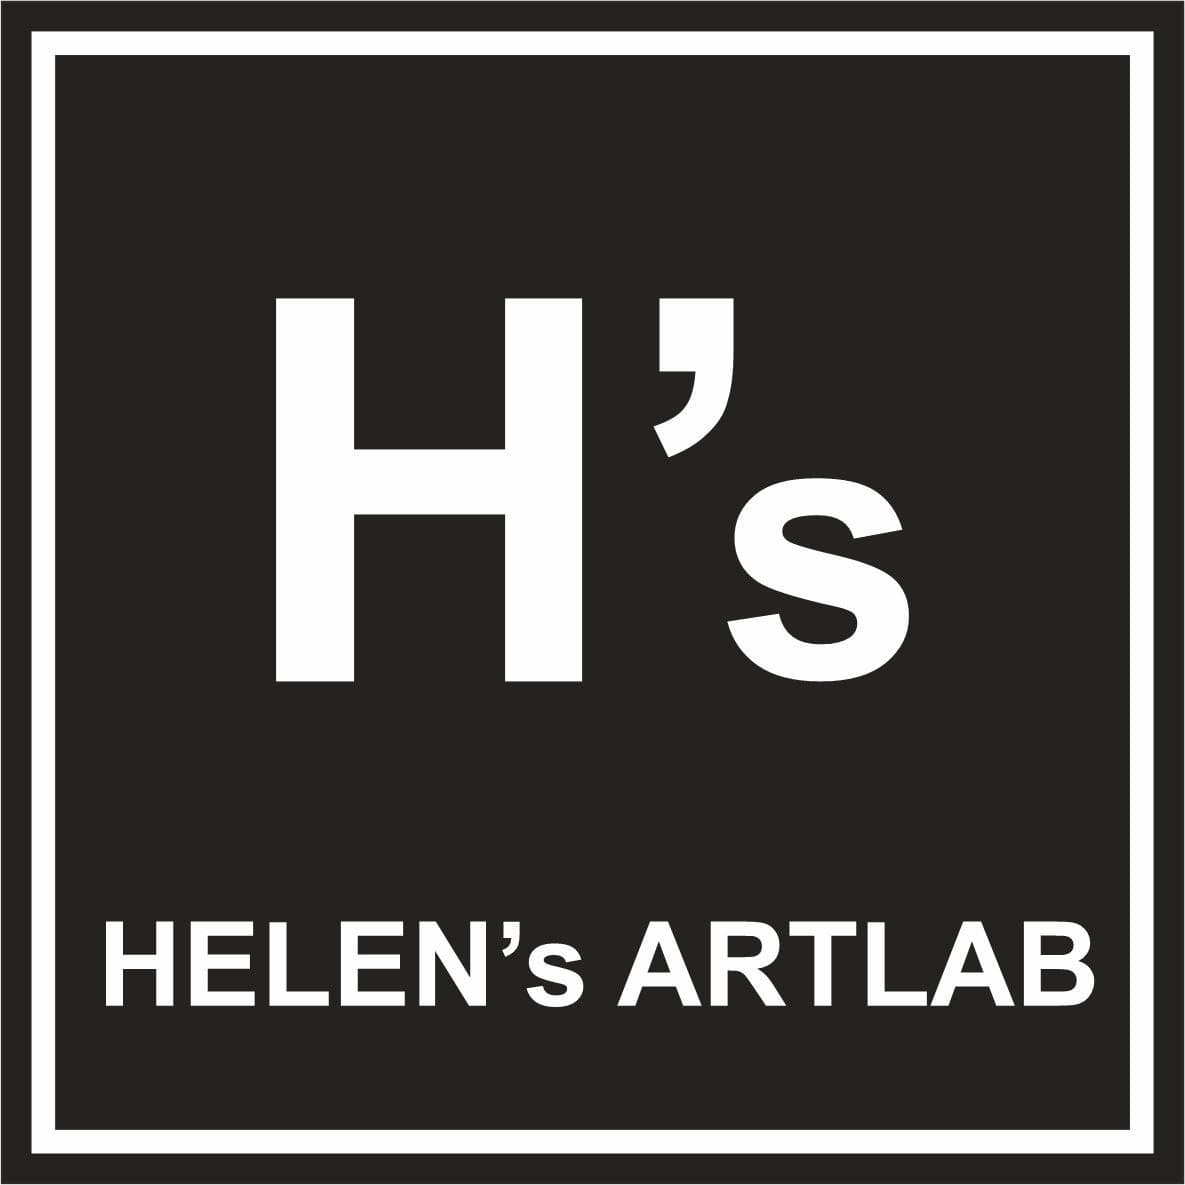 Helen's ArtLab